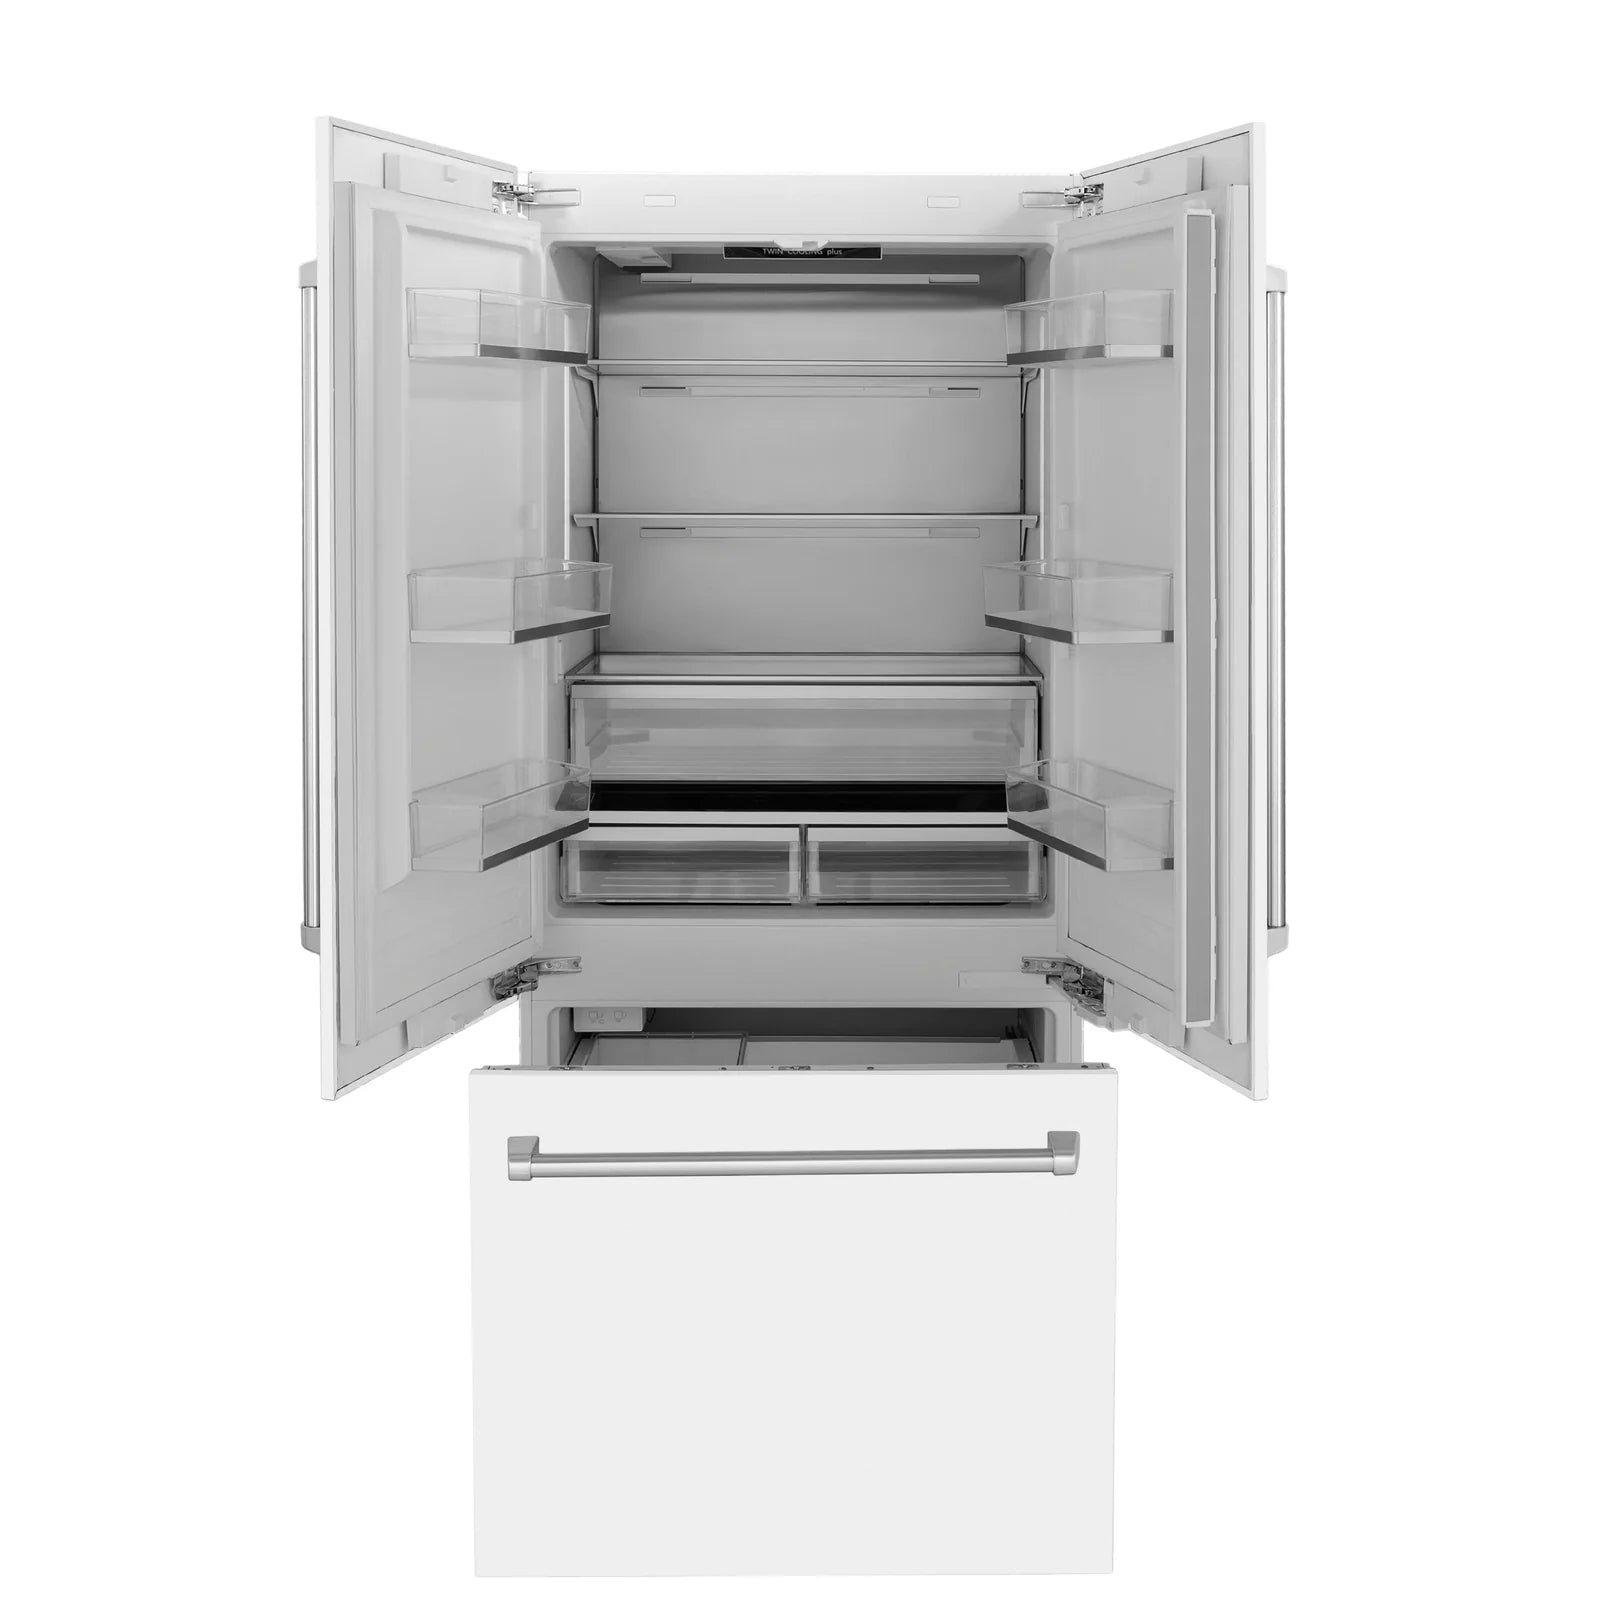 ZLINE 36" 19.6 cu. ft. Built-In 3-Door French Door Refrigerator with Internal Water and Ice Dispenser in White Matte (RBIV-WM-36)